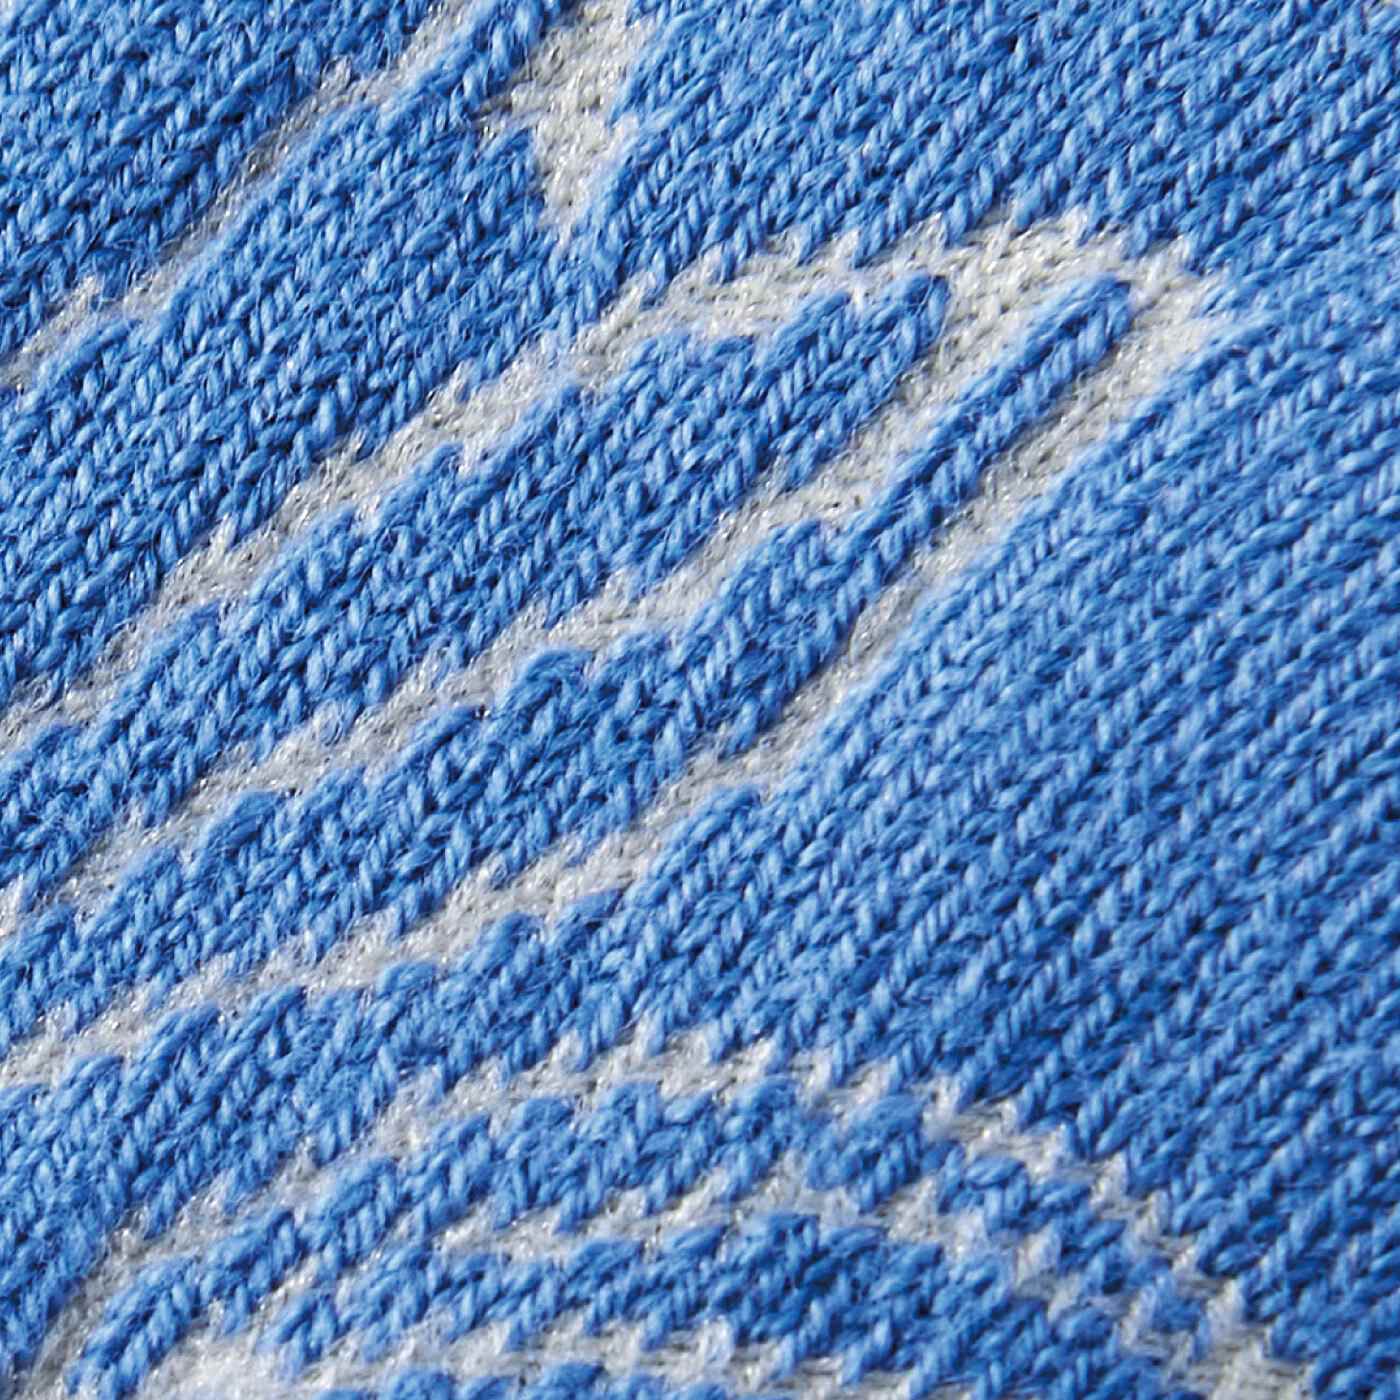 SAANA JA OLLI|サーナ ヤ オッリ　アートと編地の組み合わせを楽しむ　かかと肌側のみシルク遣いのコットン混靴下の会|透かし編み：奥行きを感じる透かし編み。